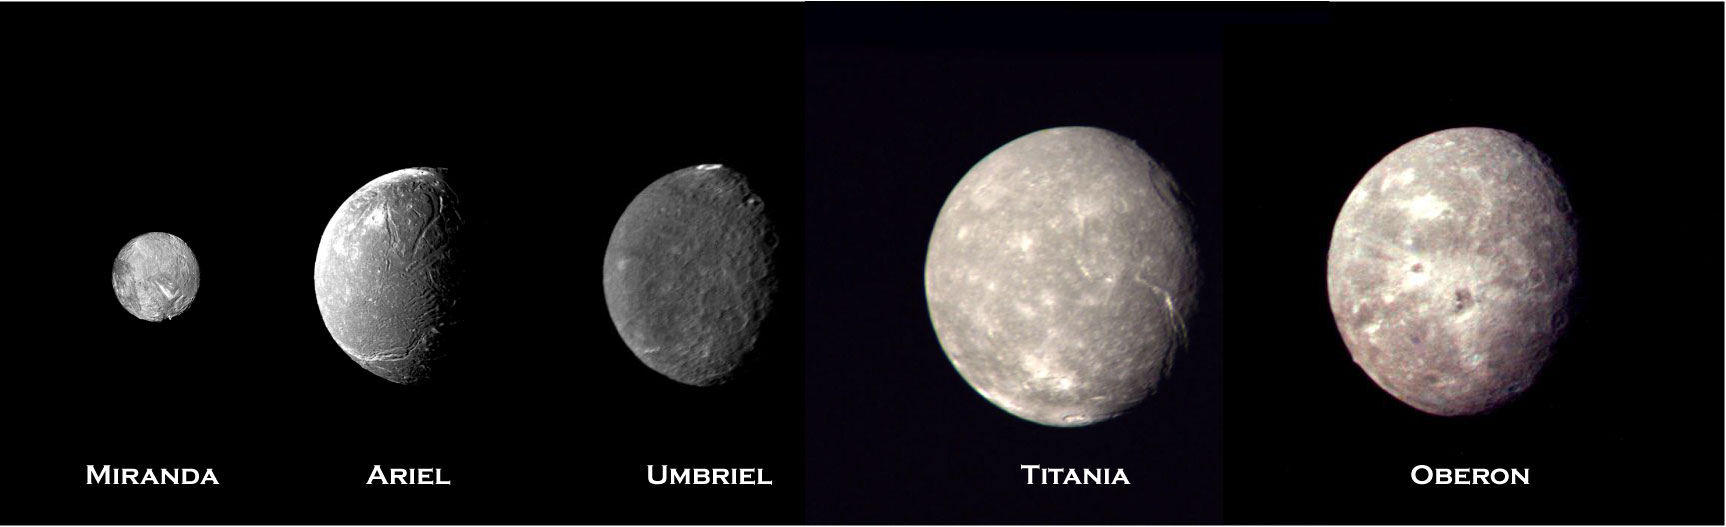 天王星主要衛星的比較